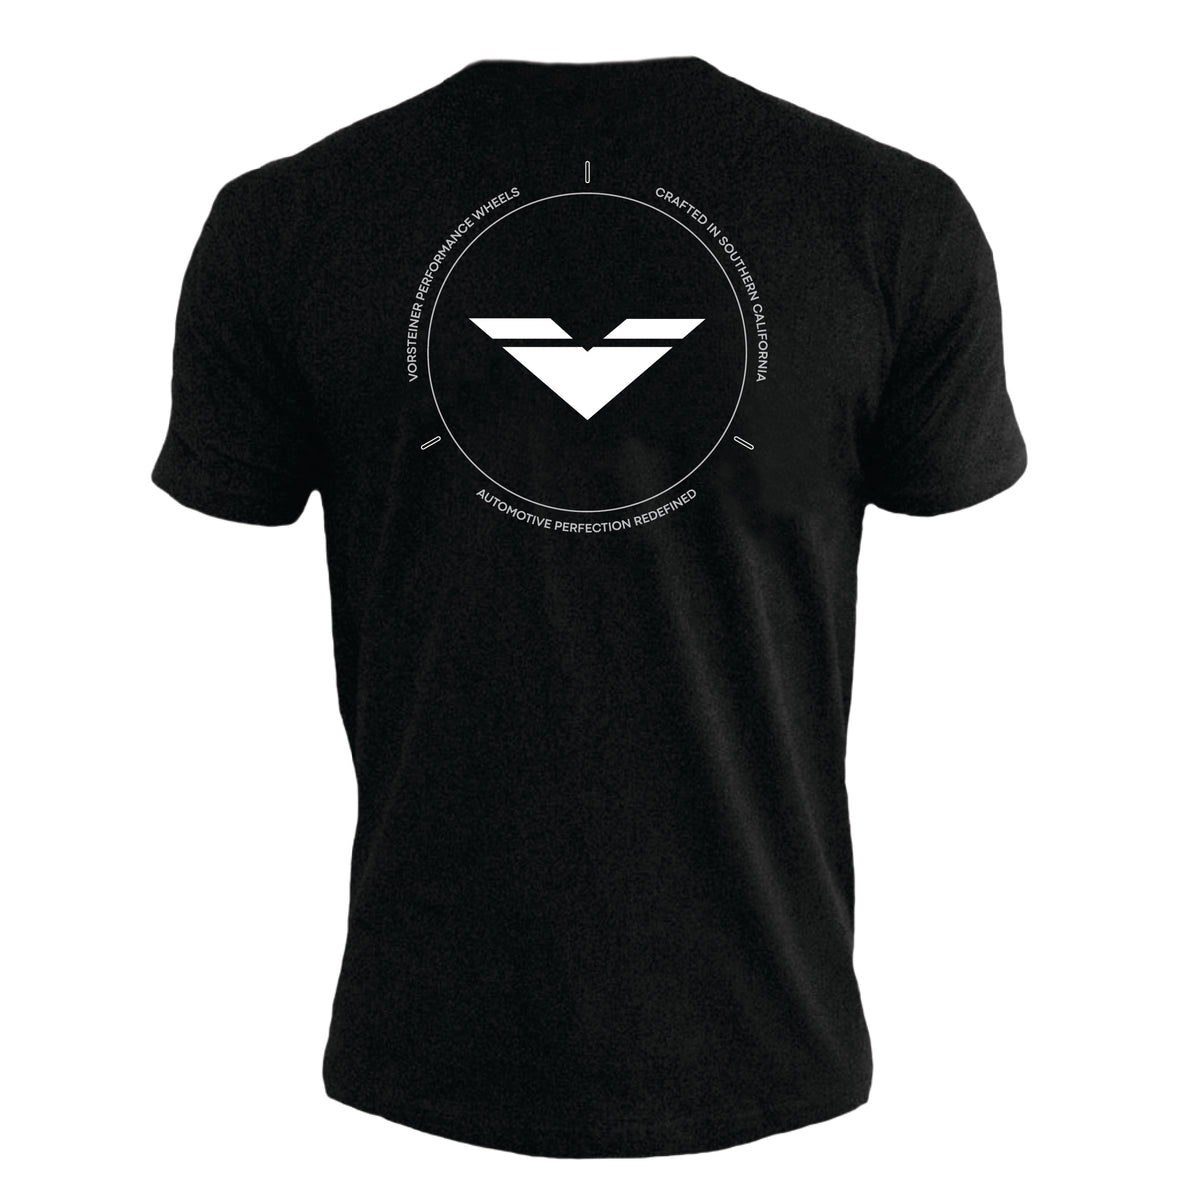 Vorsteiner Print T-Shirt Black (Preorder) - Vorsteiner Wheels  -  - [tags]